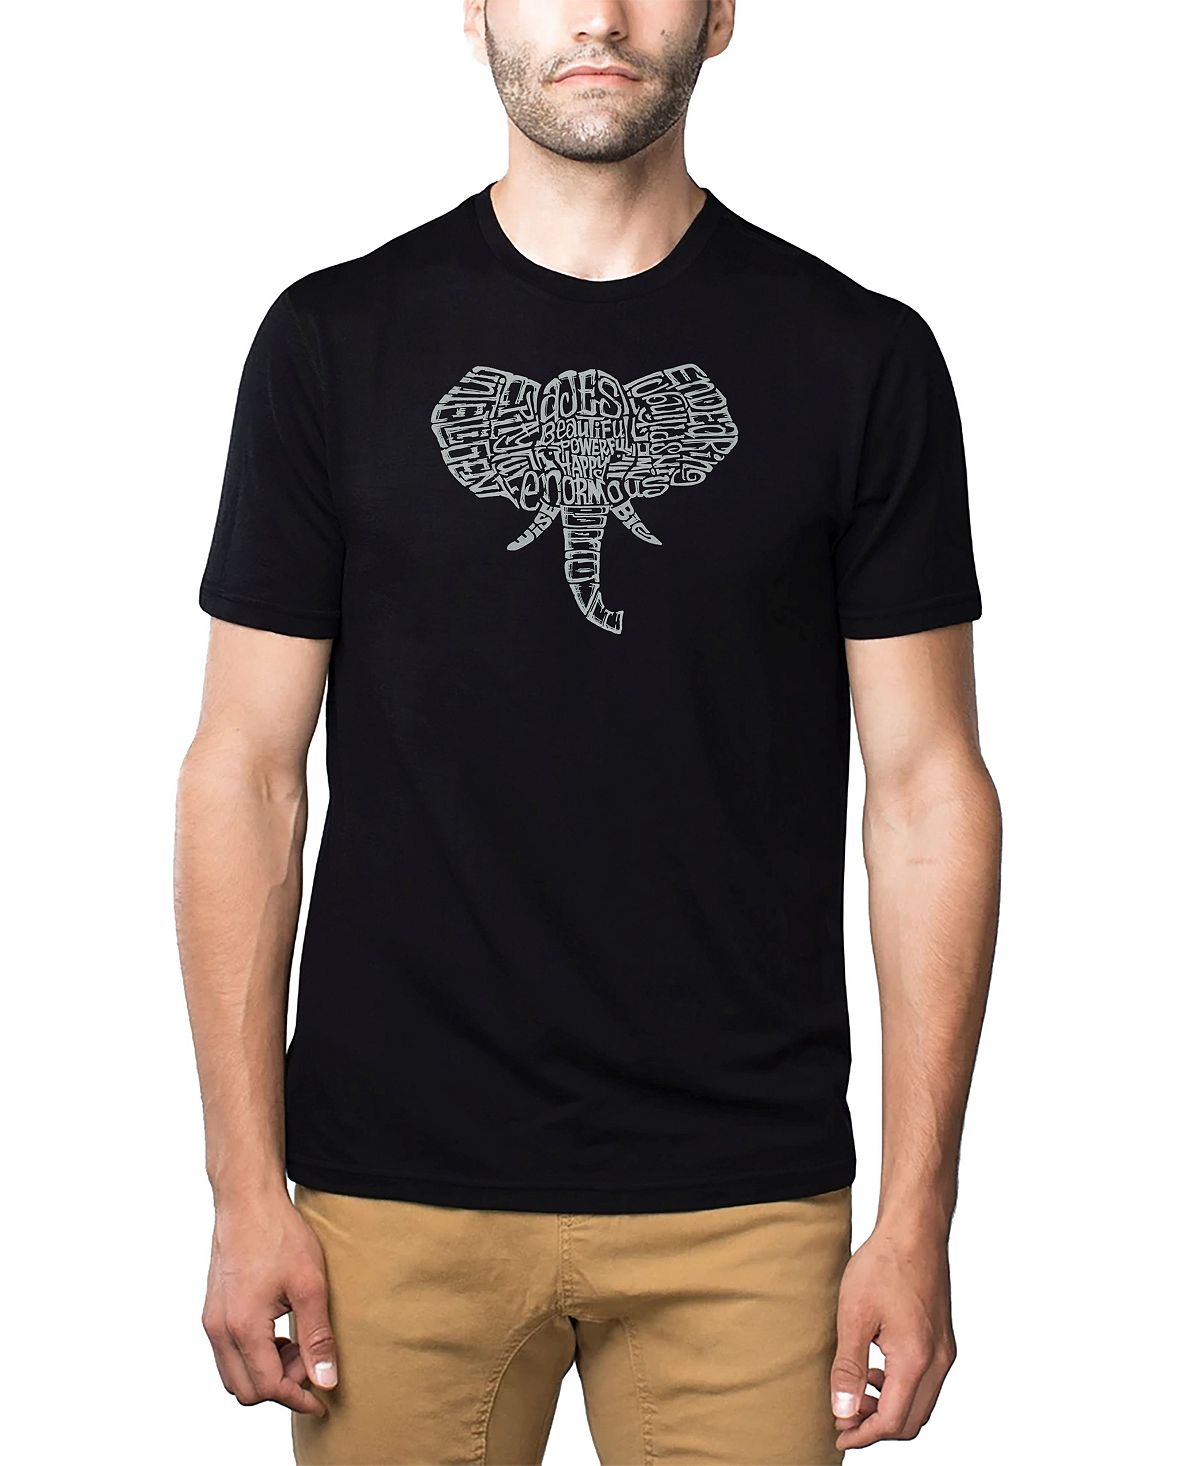 Мужская футболка premium blend word art - бивни слона LA Pop Art, черный